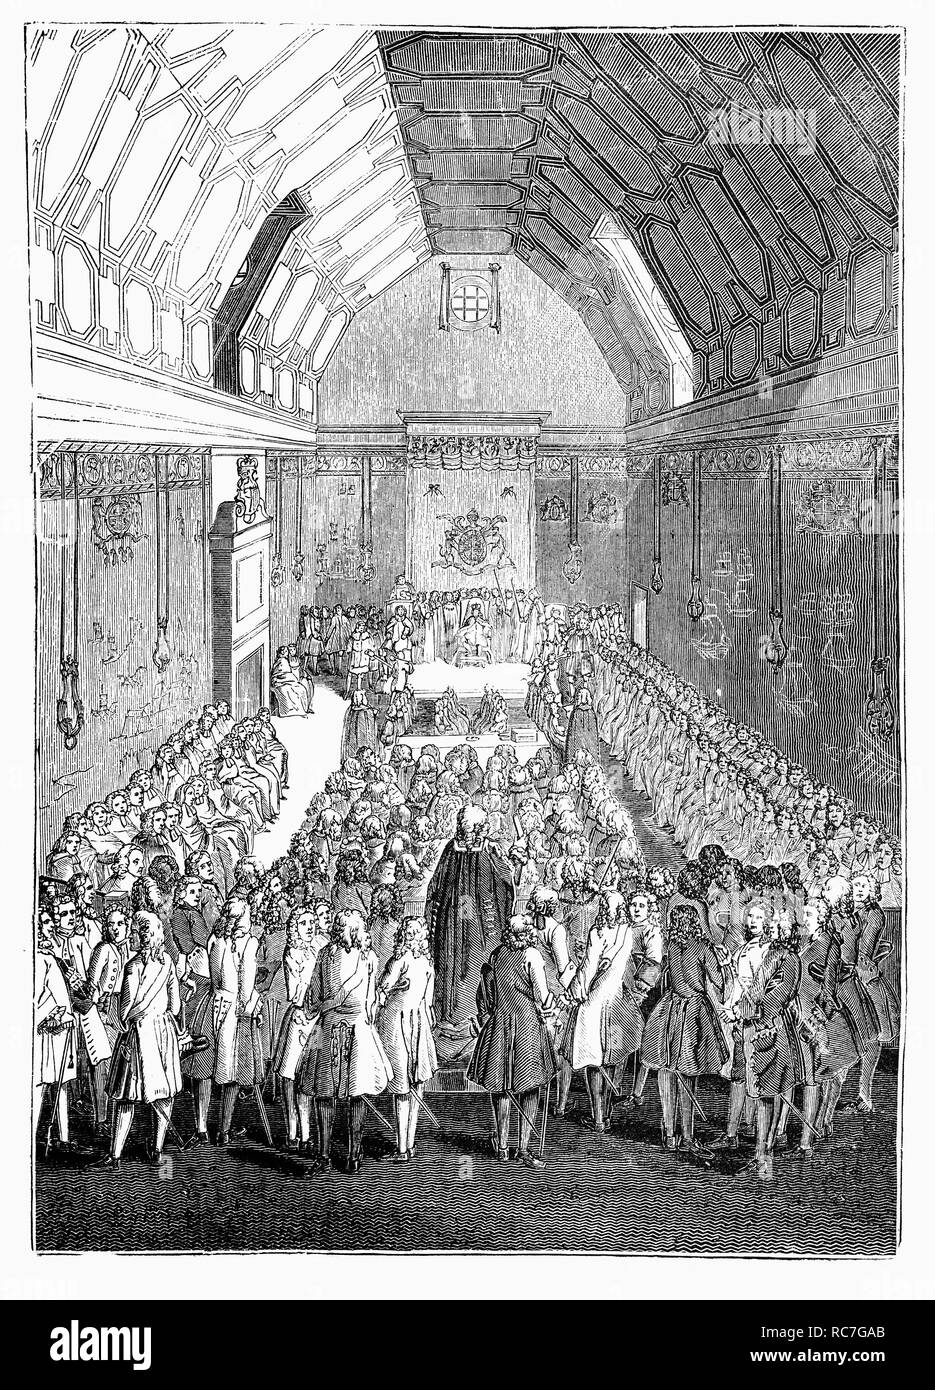 La Cámara de los Lores, durante el reinado del rey George II. Al igual que la Cámara de los Comunes, que se reúne en el Palacio de Westminster, pero era más potente que la Cámara de los Comunes. La Cámara Baja continuó creciendo en influencia, alcanzando un apogeo durante el siglo XVII, cuando tras la guerra civil inglesa, la Cámara de los Lores se redujo a un gran cuerpo impotente. El 19 de marzo de 1649, la Cámara de los Lores fue abolida por una ley del Parlamento. Después de la Convención, el Parlamento se reunió en 1660 y la monarquía fue restaurada, de nuevo se convirtió en la más poderosa Cámara del Parlamento hasta el siglo XIX. Foto de stock